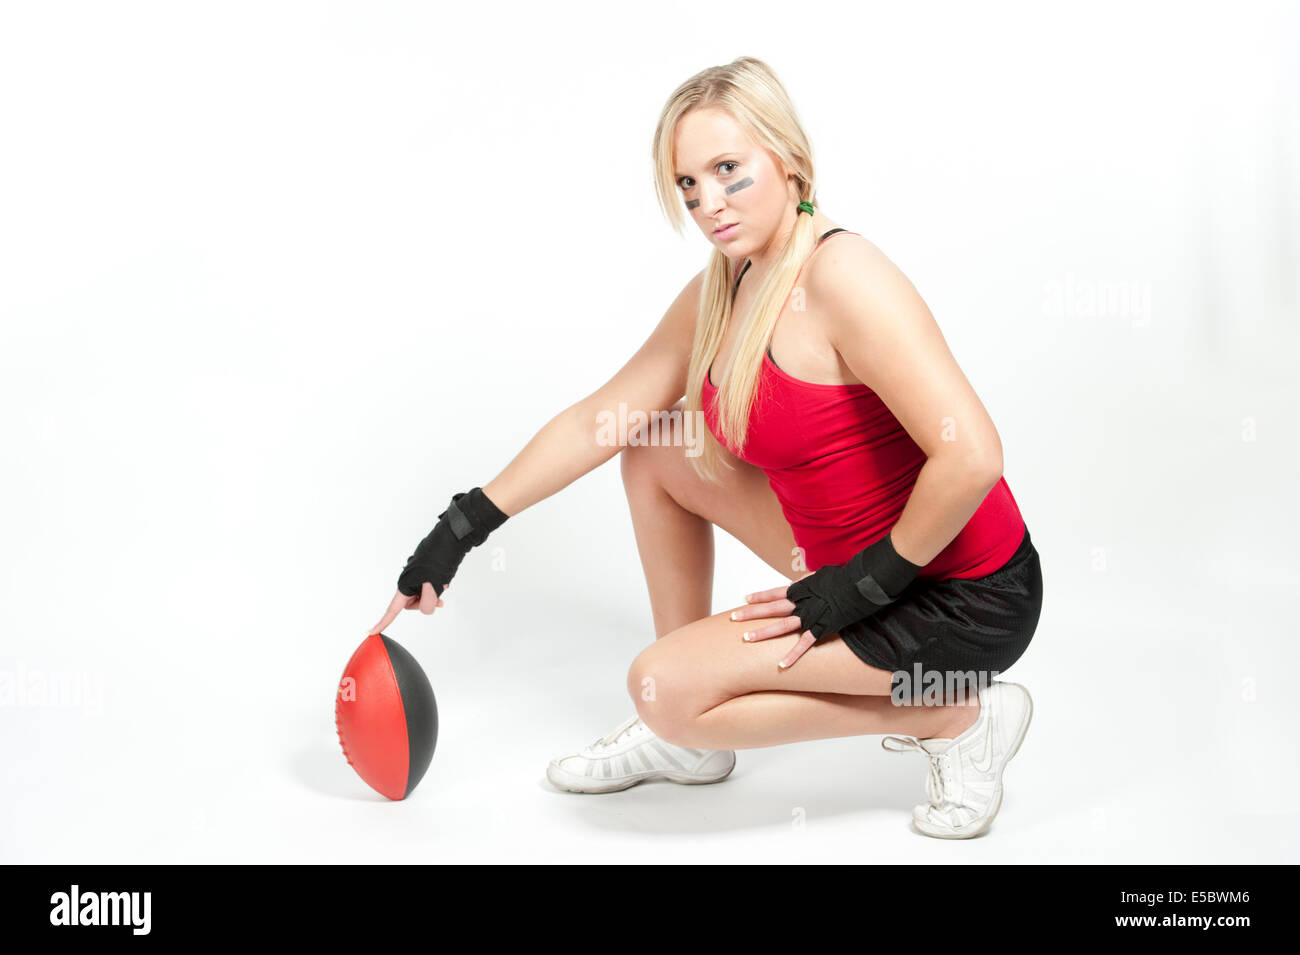 Eine junge Modell tragen einen roten Top und schwarze Shorts Einstellung der Fußballs für einen Kick. Stockfoto